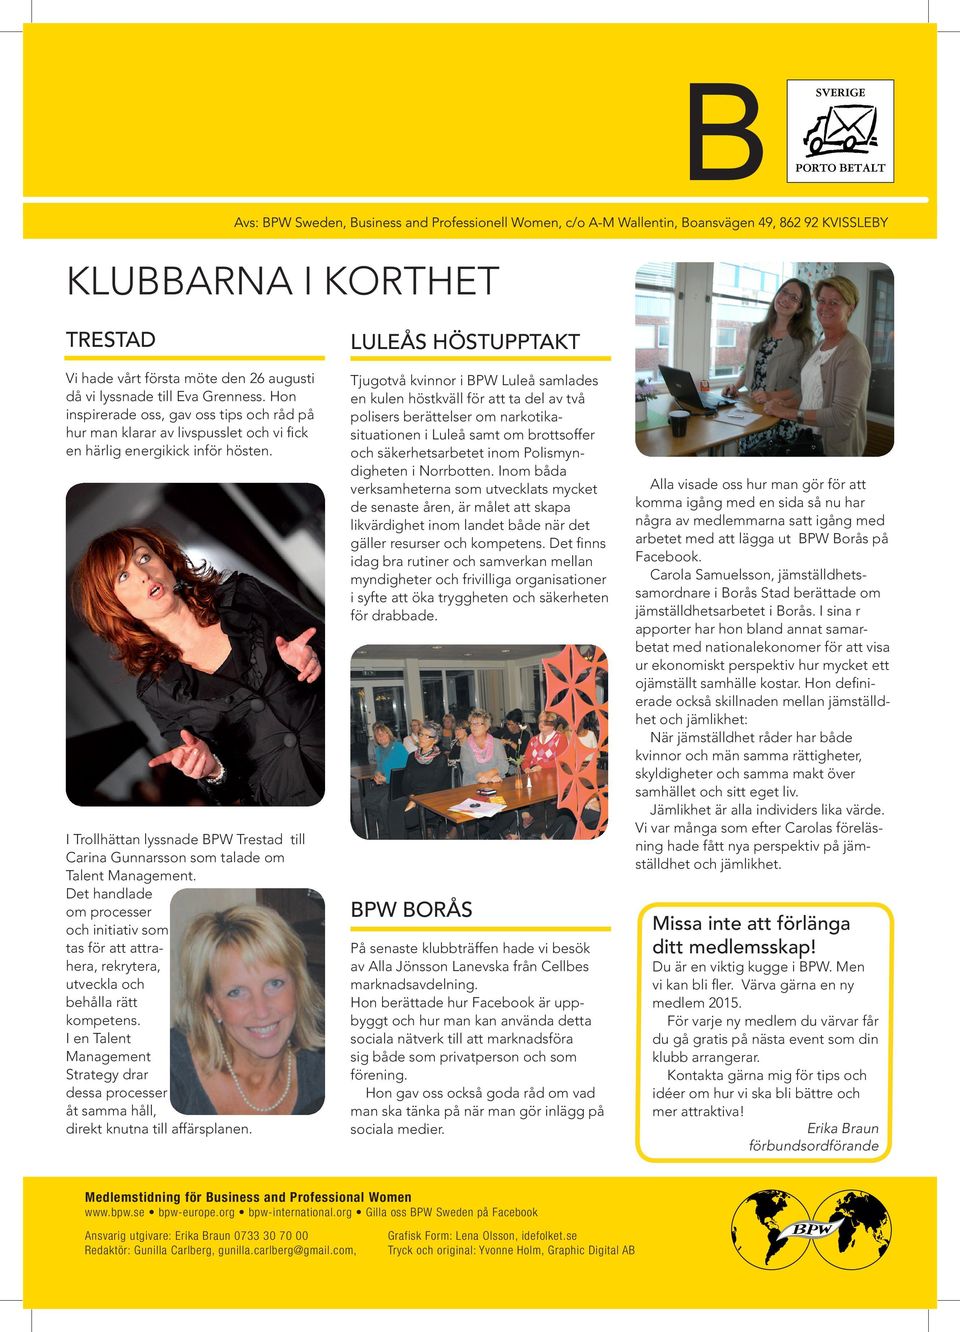 I Trollhättan lyssnade BPW Trestad till Carina Gunnarsson som talade om Talent Management.